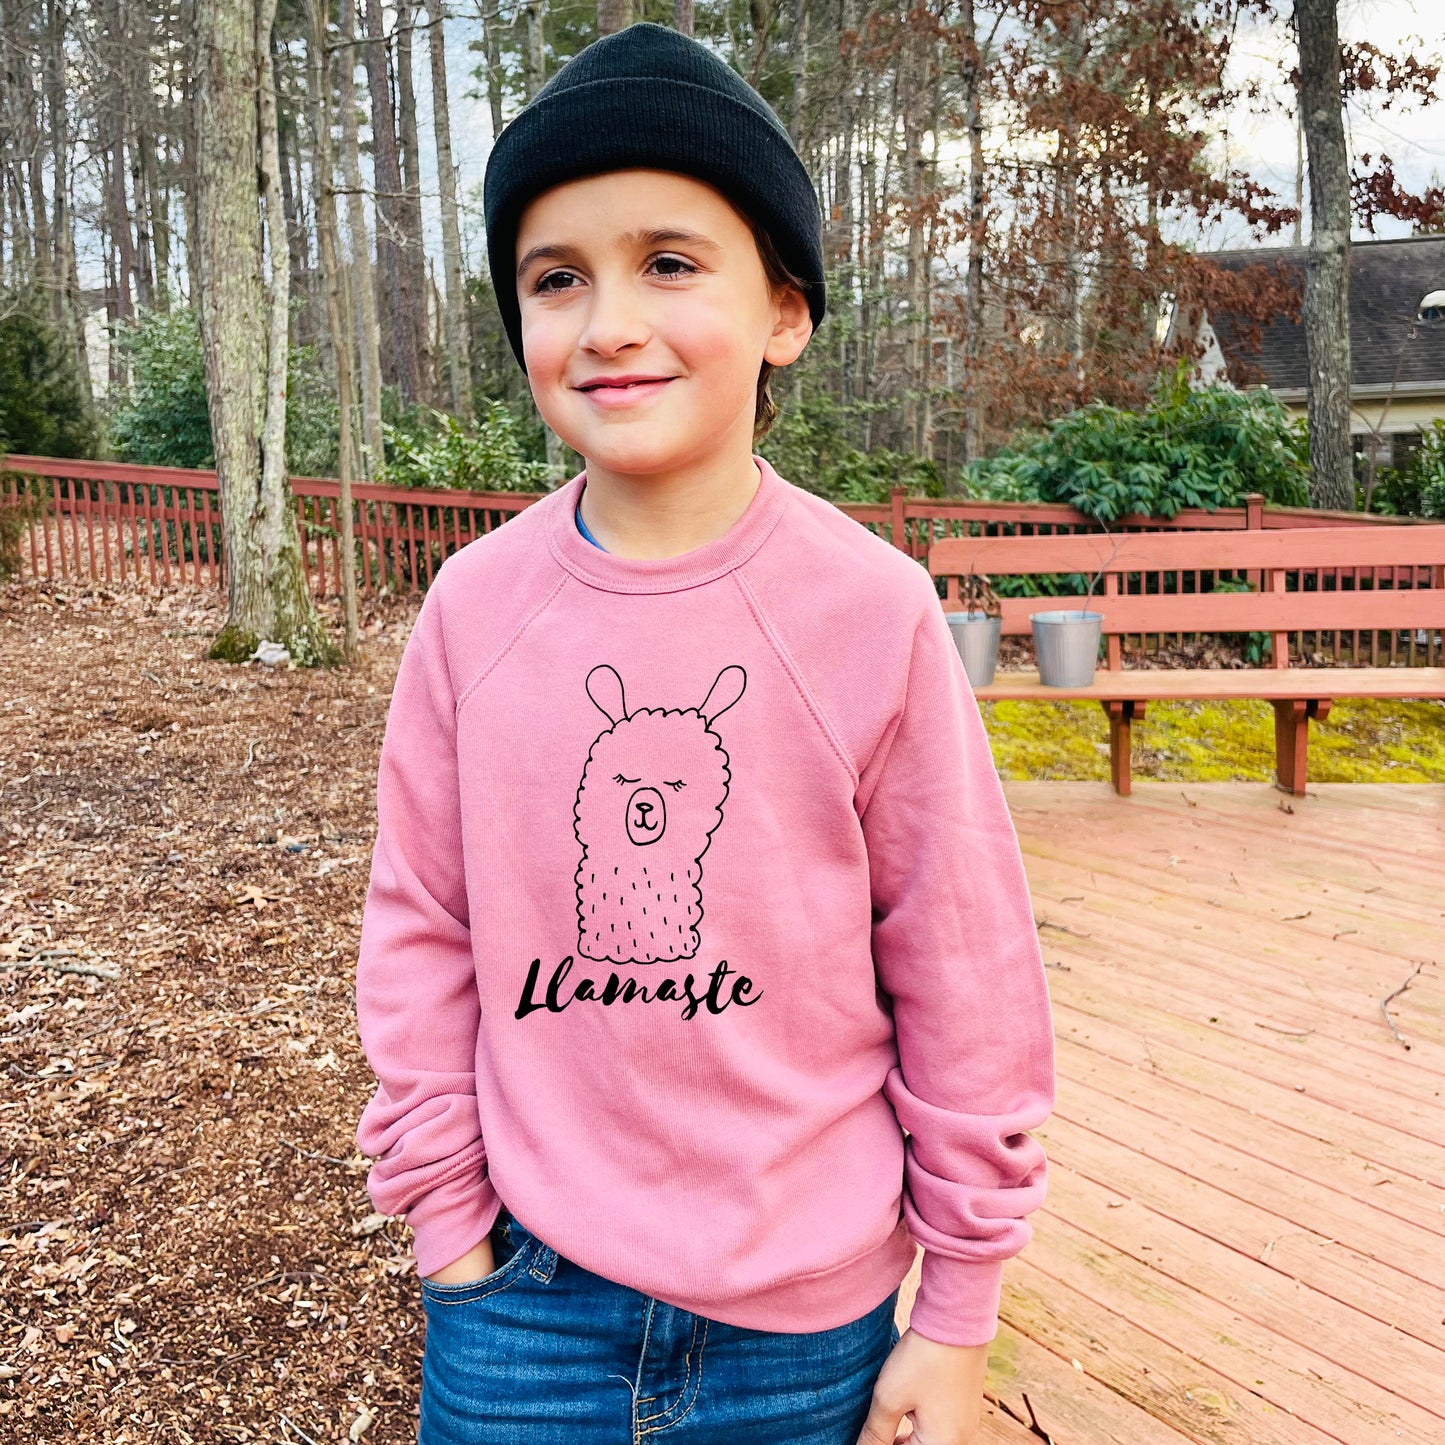 Llamaste (Llama/ Yoga) - Kid's Sweatshirt - Heather Gray or Mauve